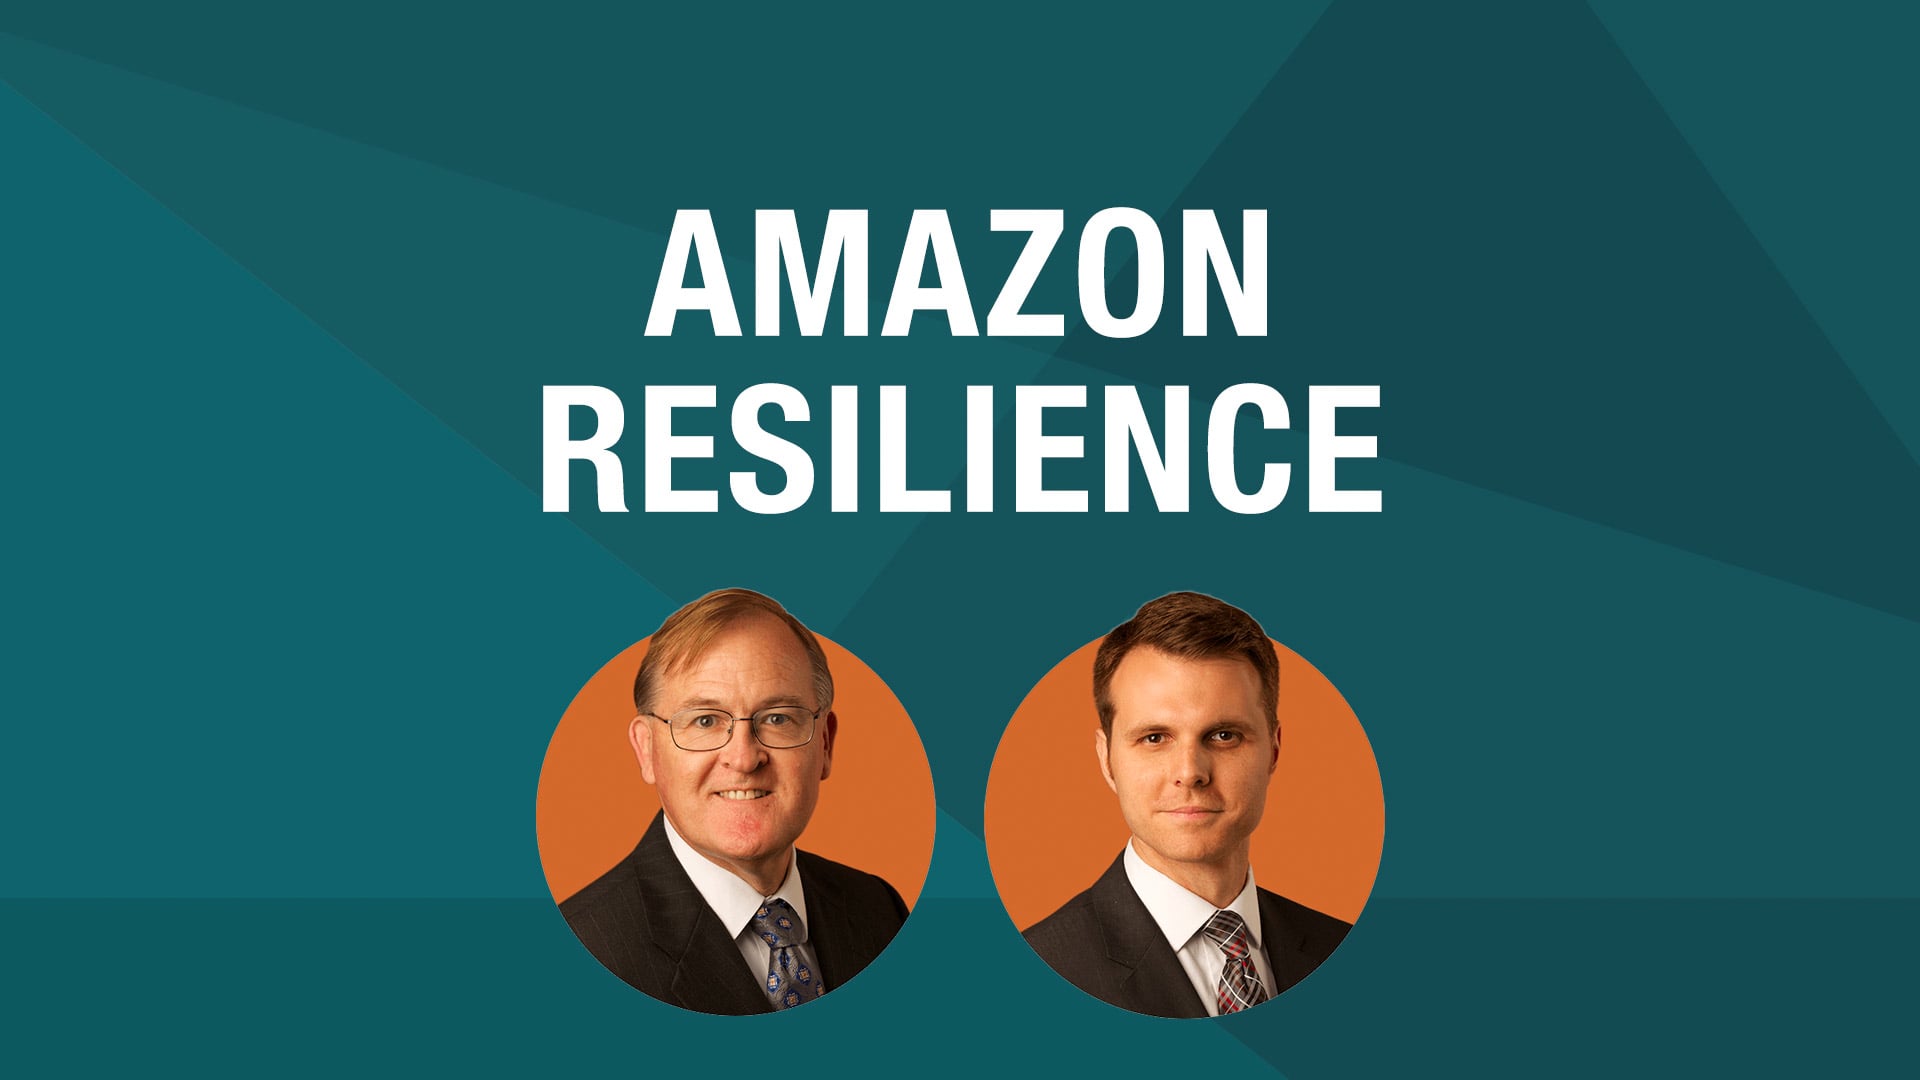 Amazon Resilience